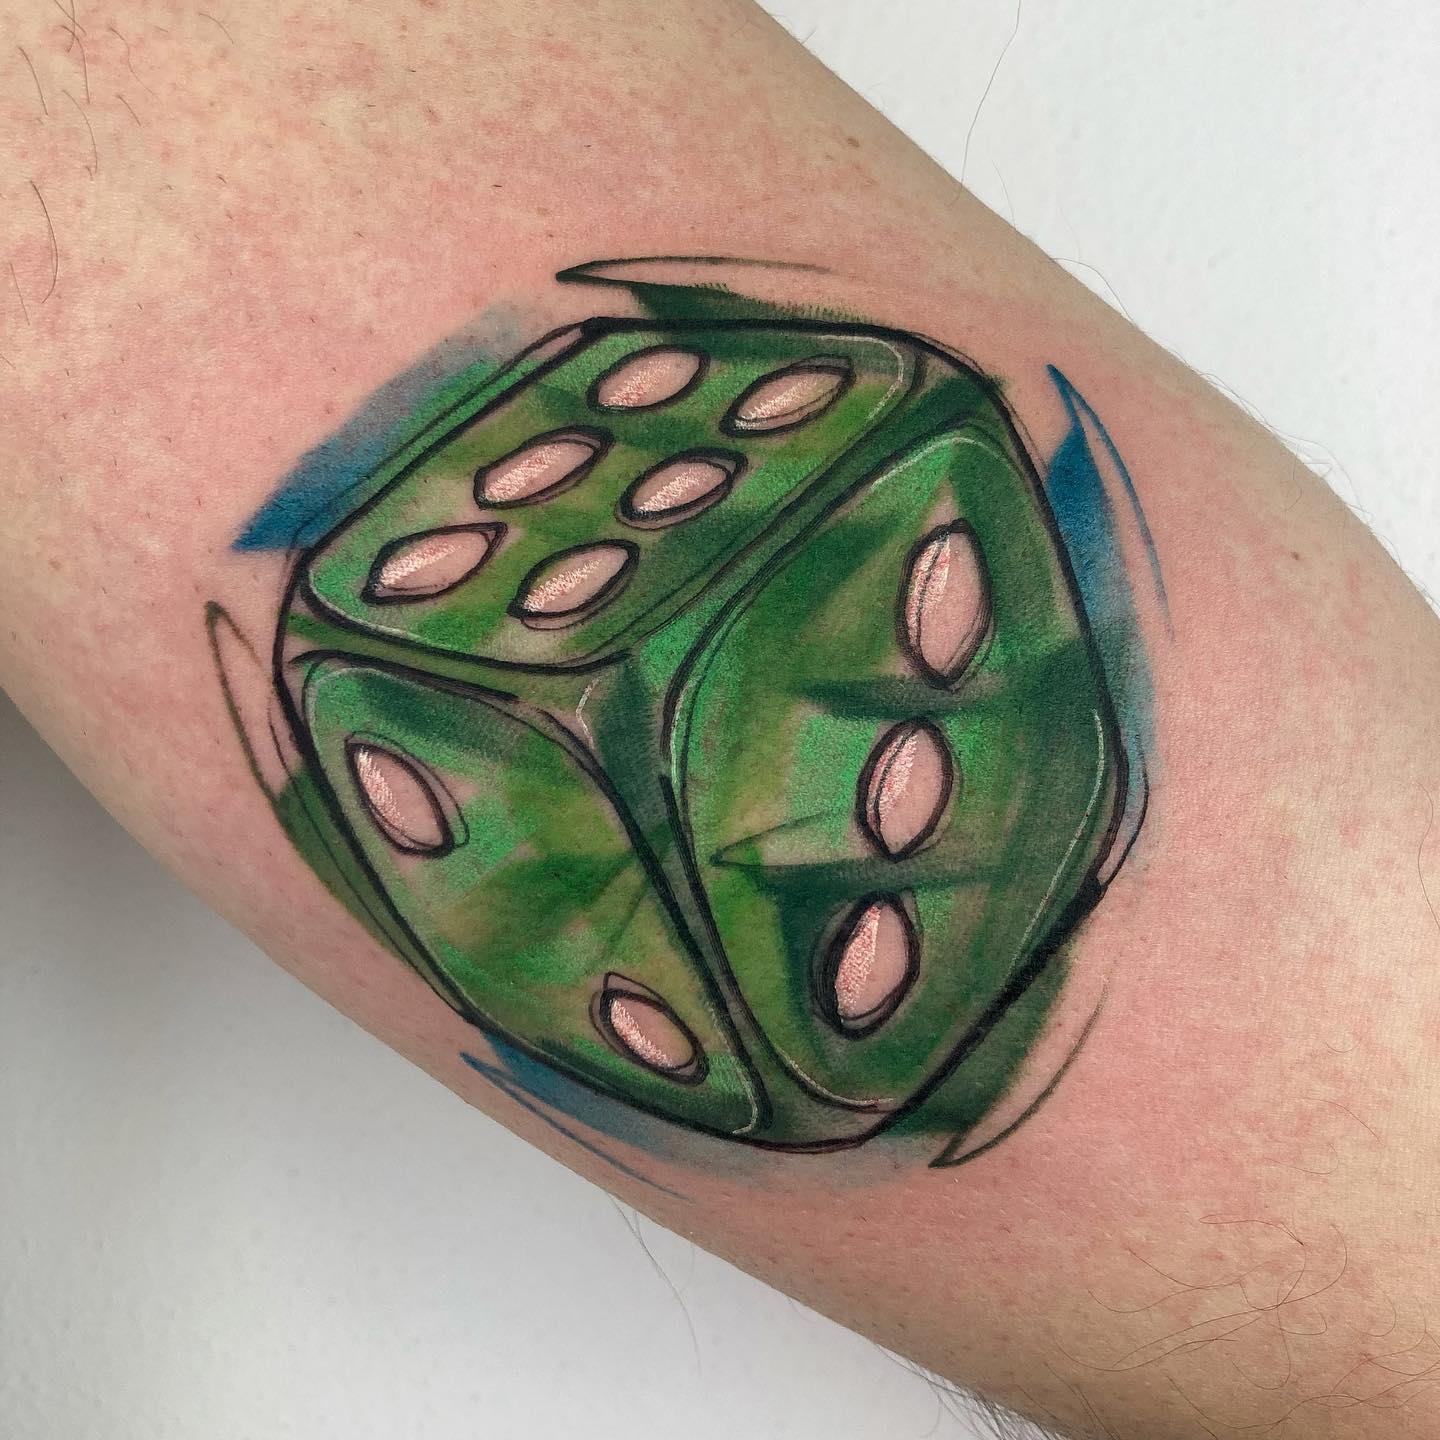 Tatuaje de dados verdes.